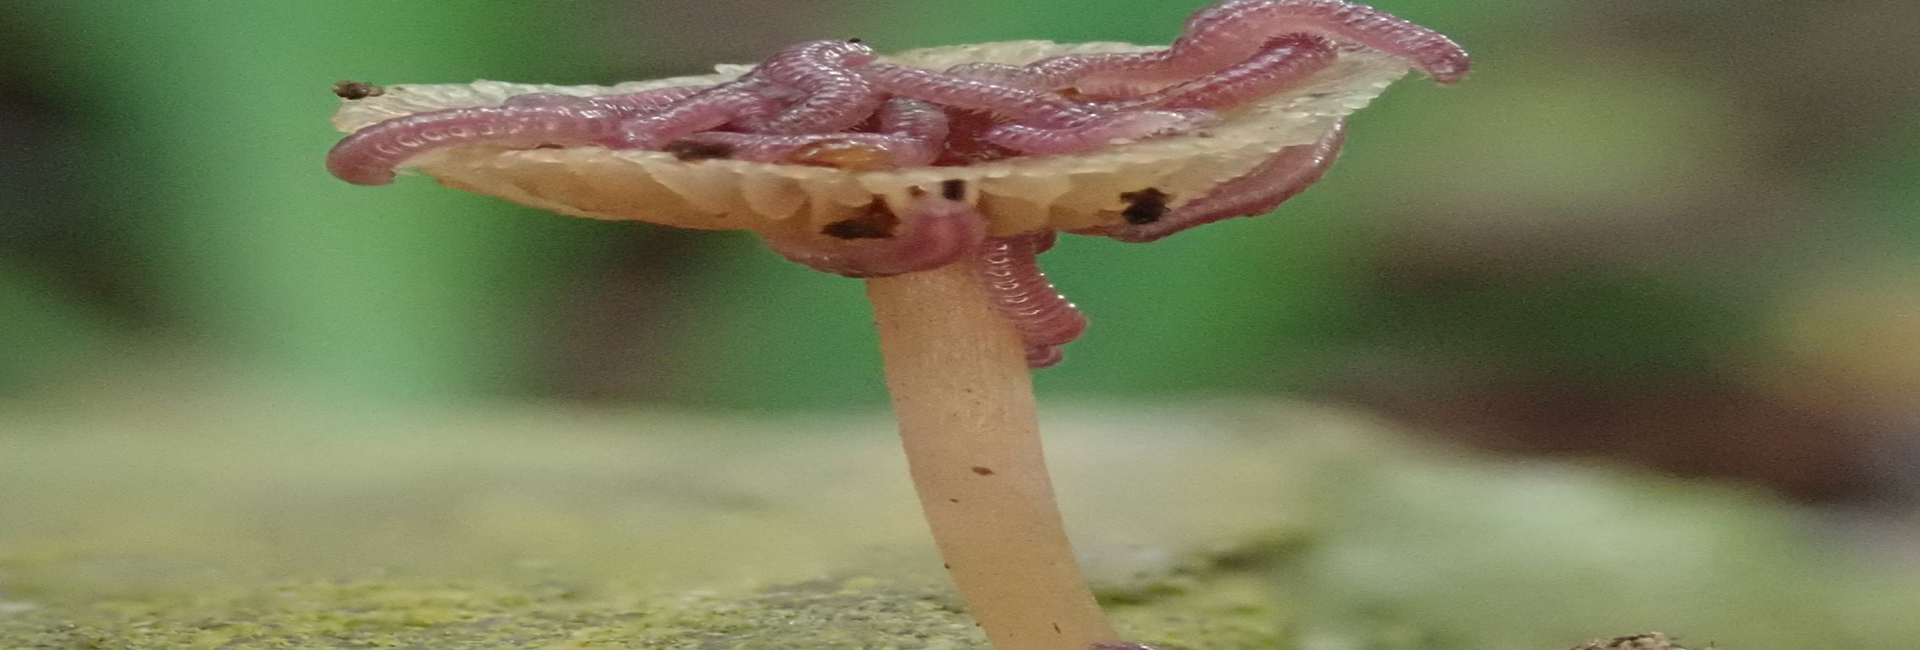 Ein Pilz mit Tausendfüßern